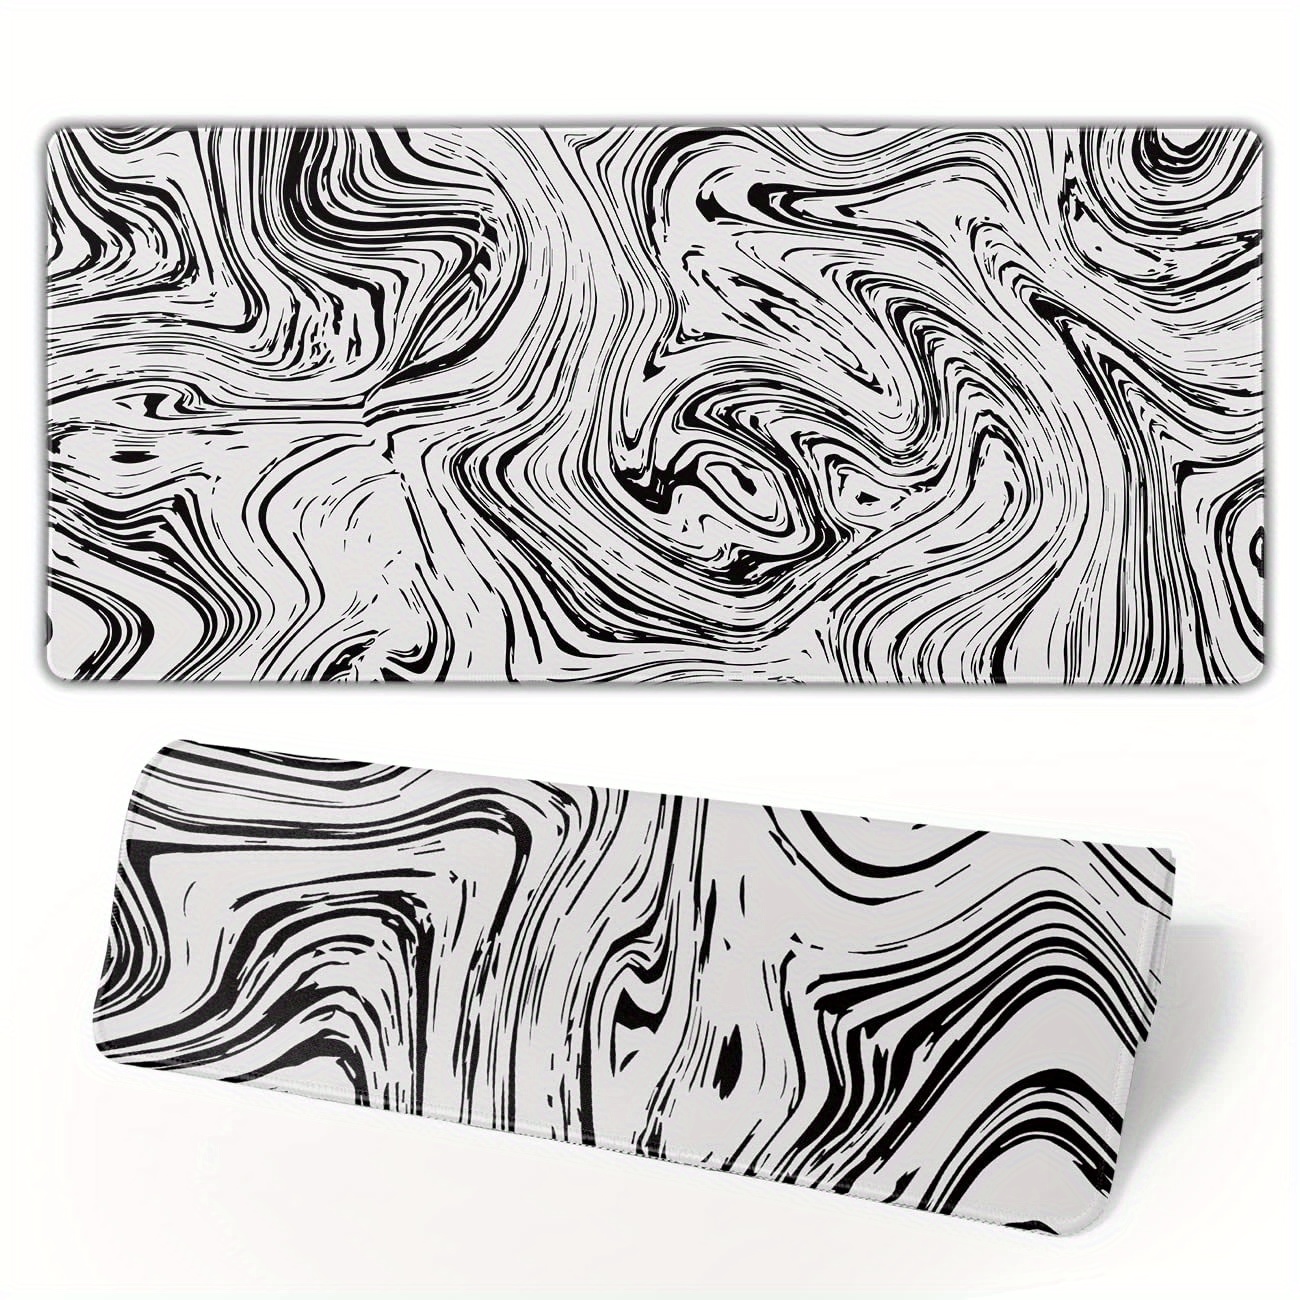 Grand tapis de souris topographique XL noir et blanc avec lignes